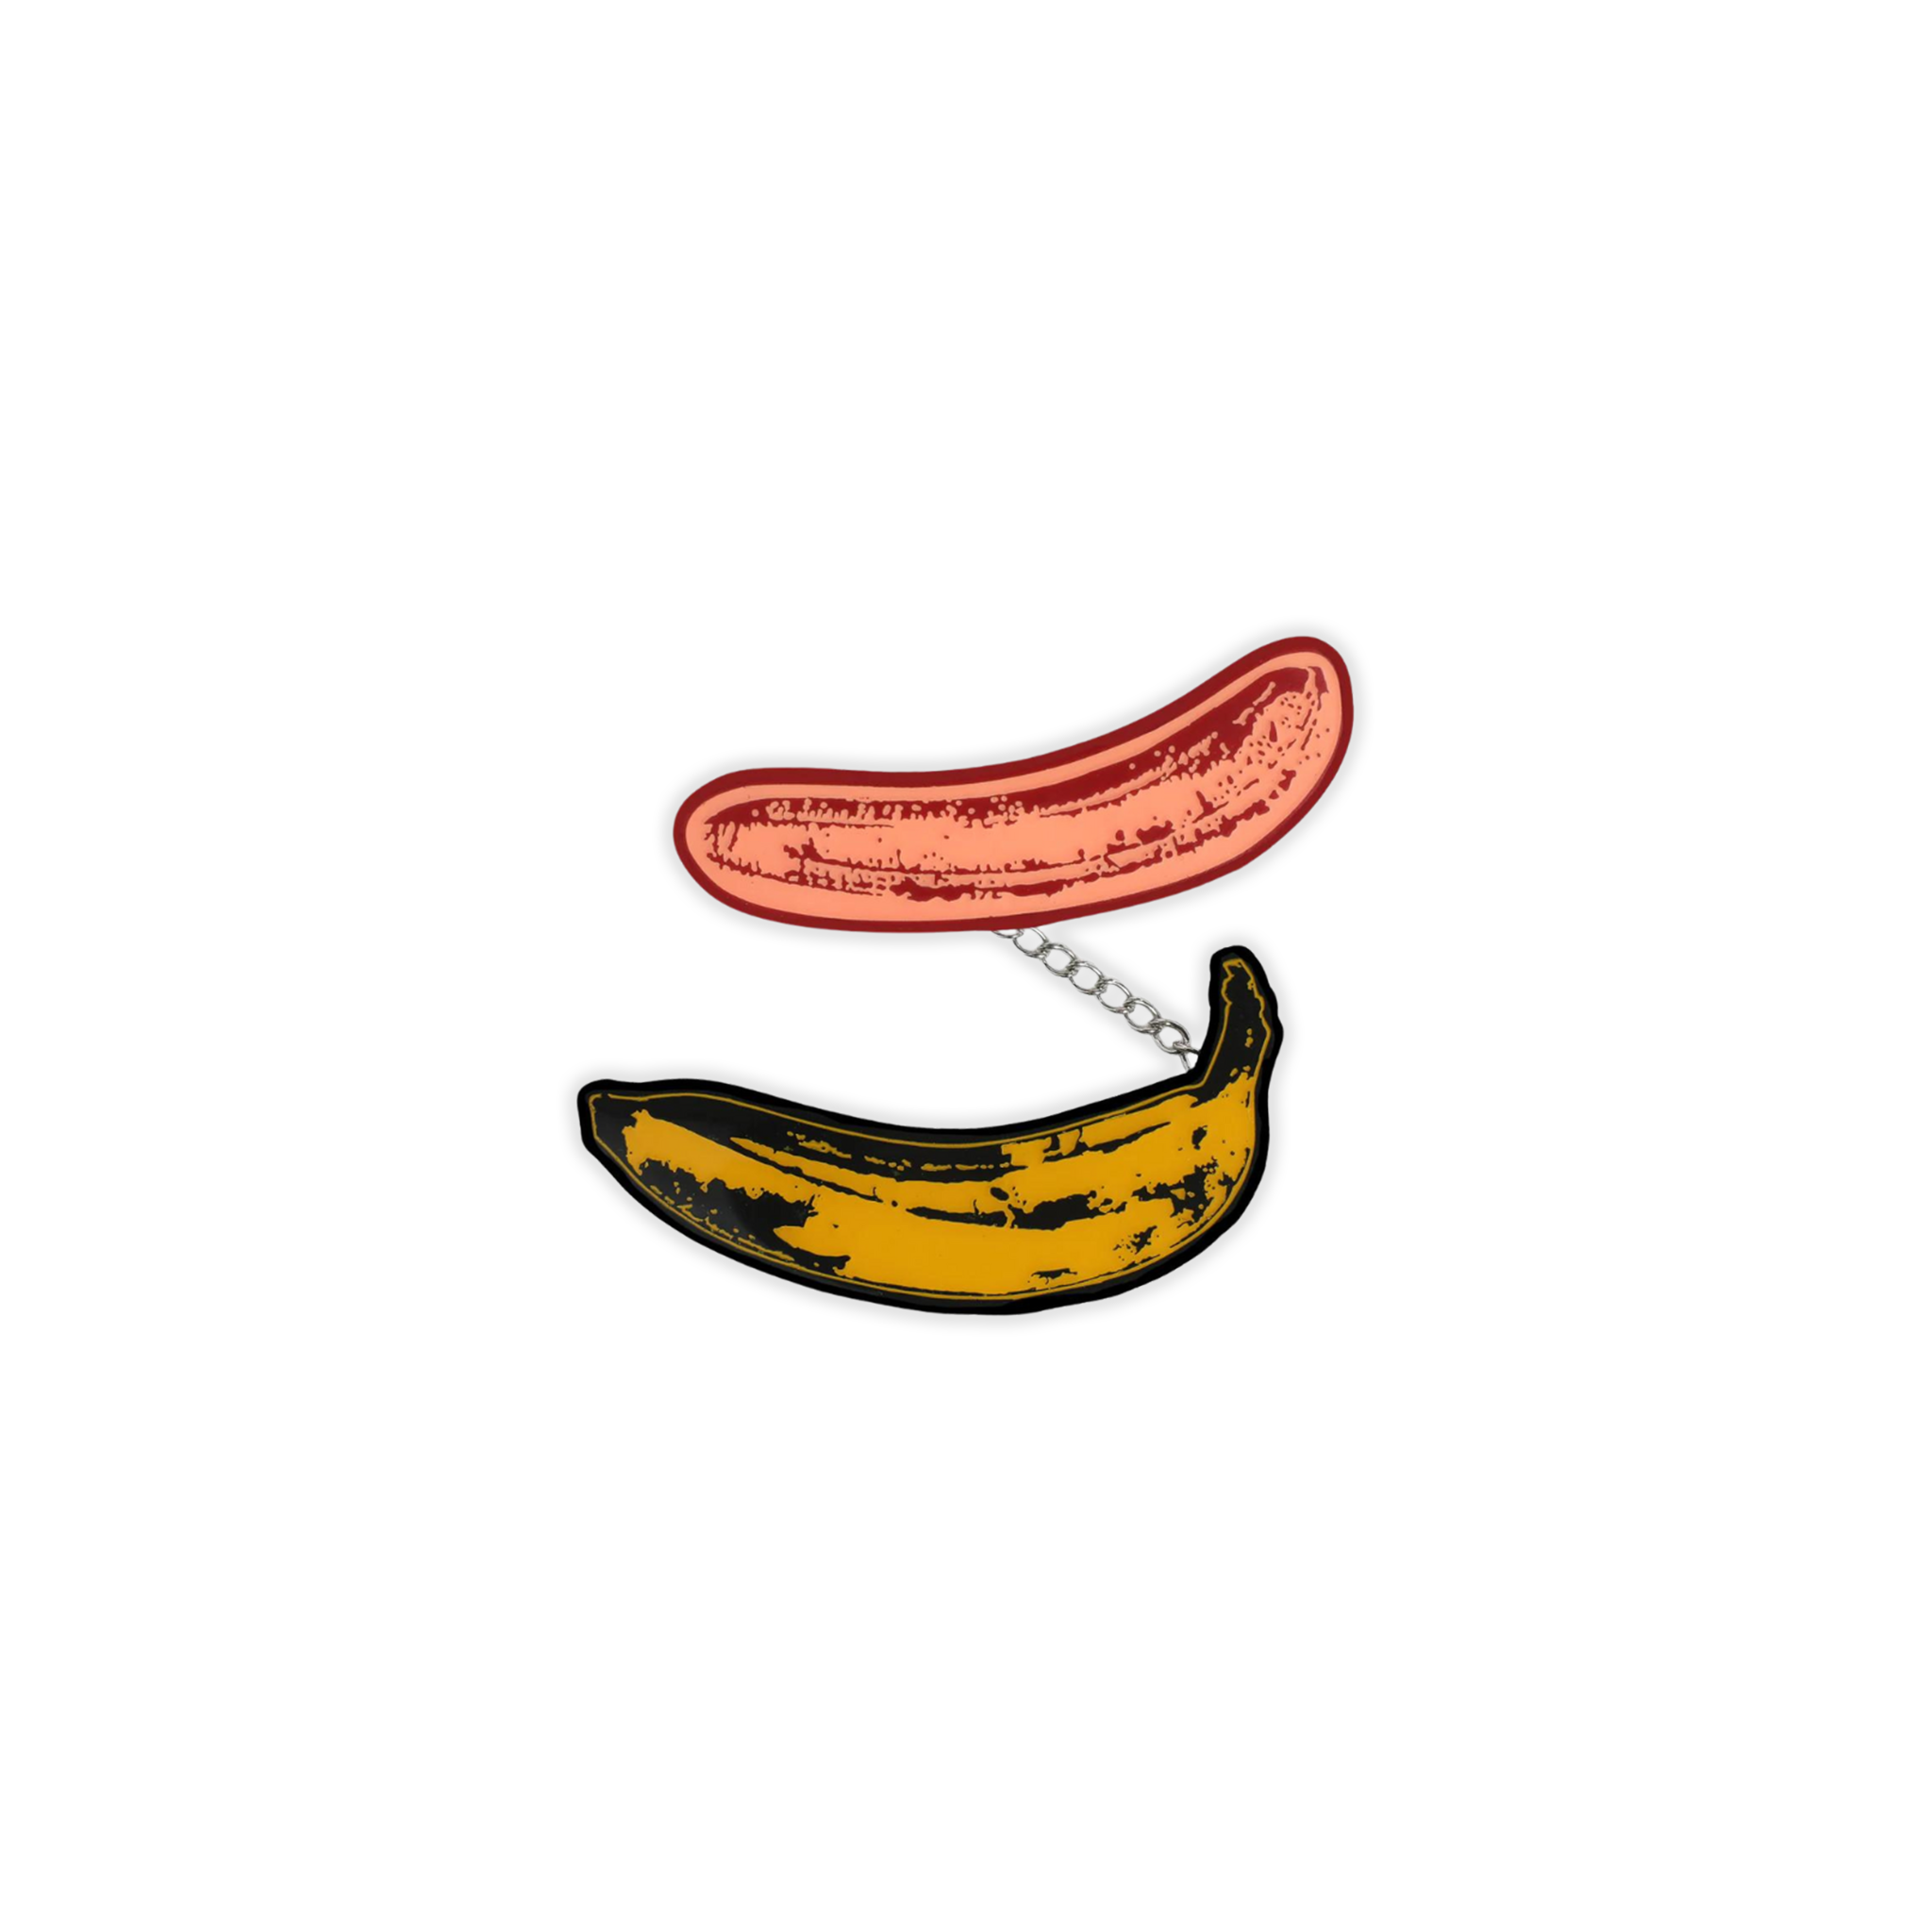 Andy Warhol 1967 Hanging Banana Pin